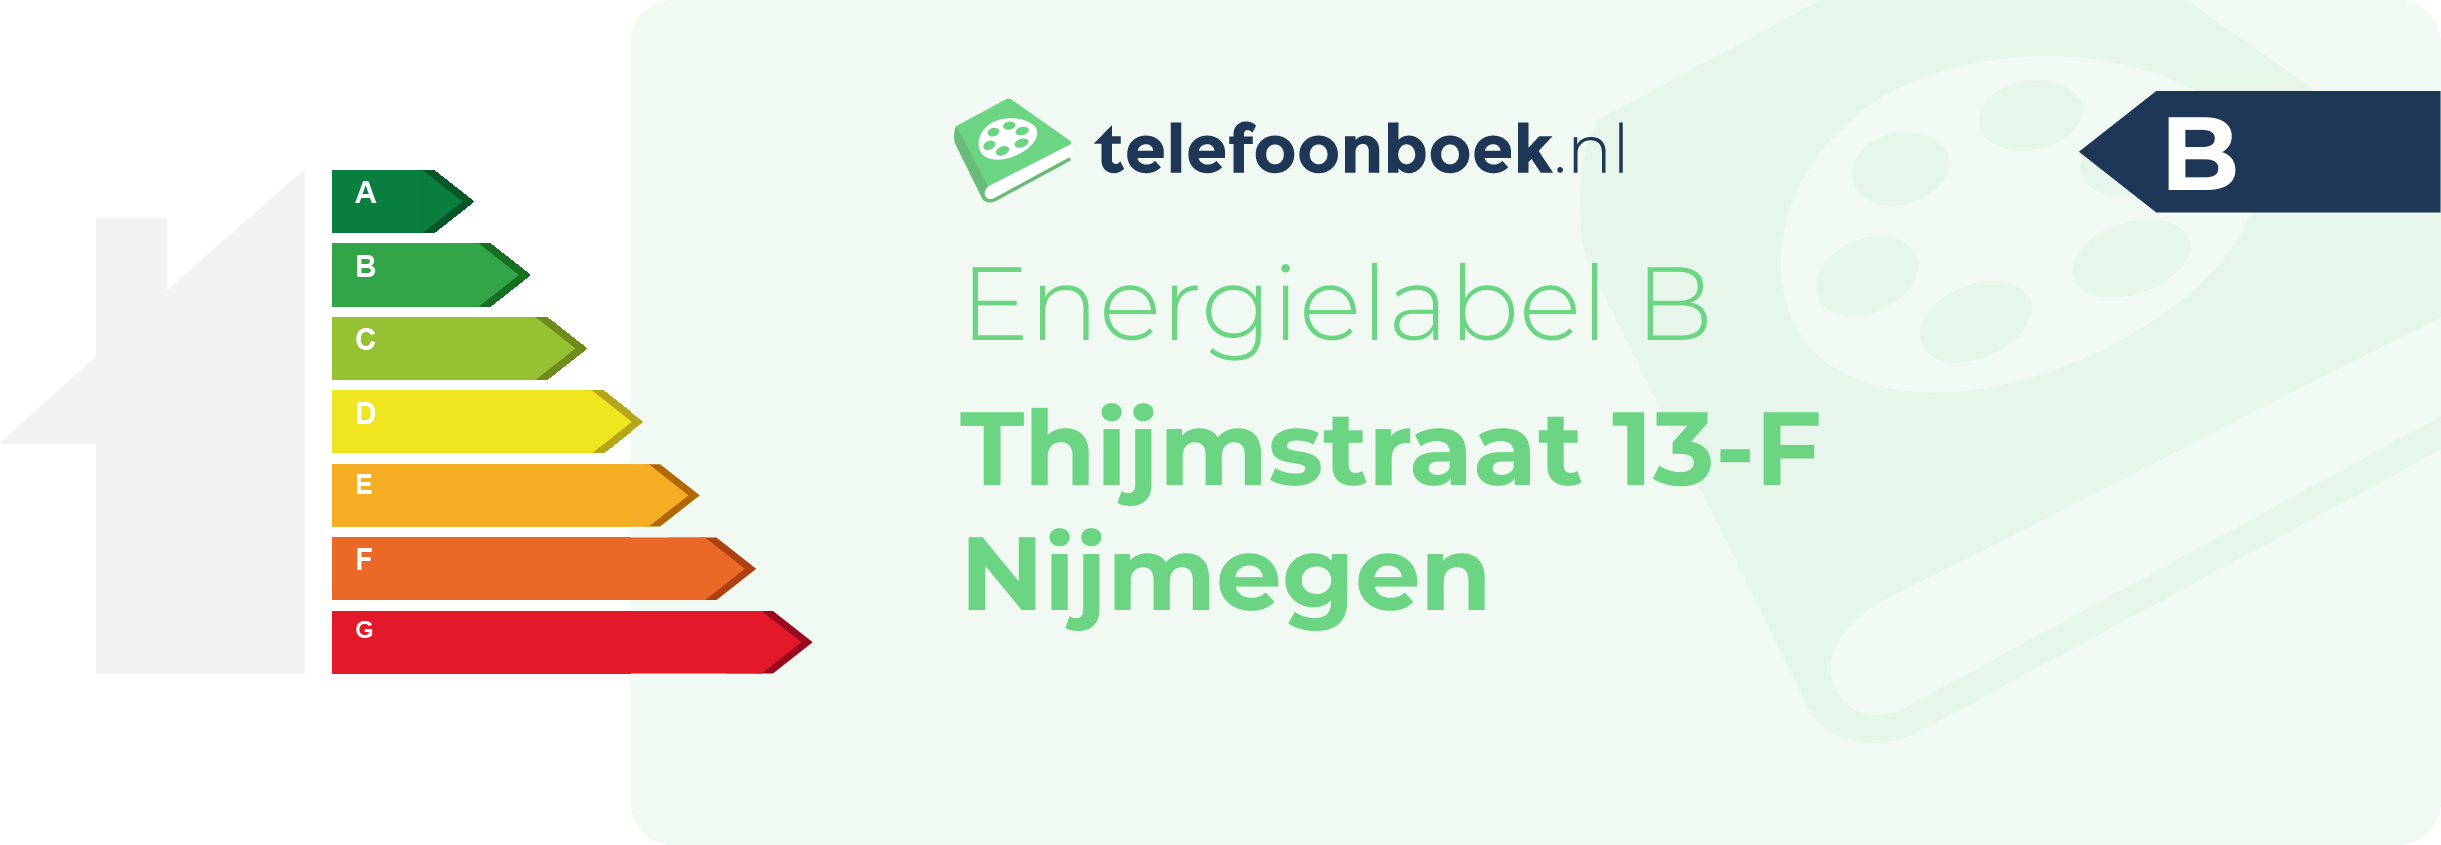 Energielabel Thijmstraat 13-F Nijmegen